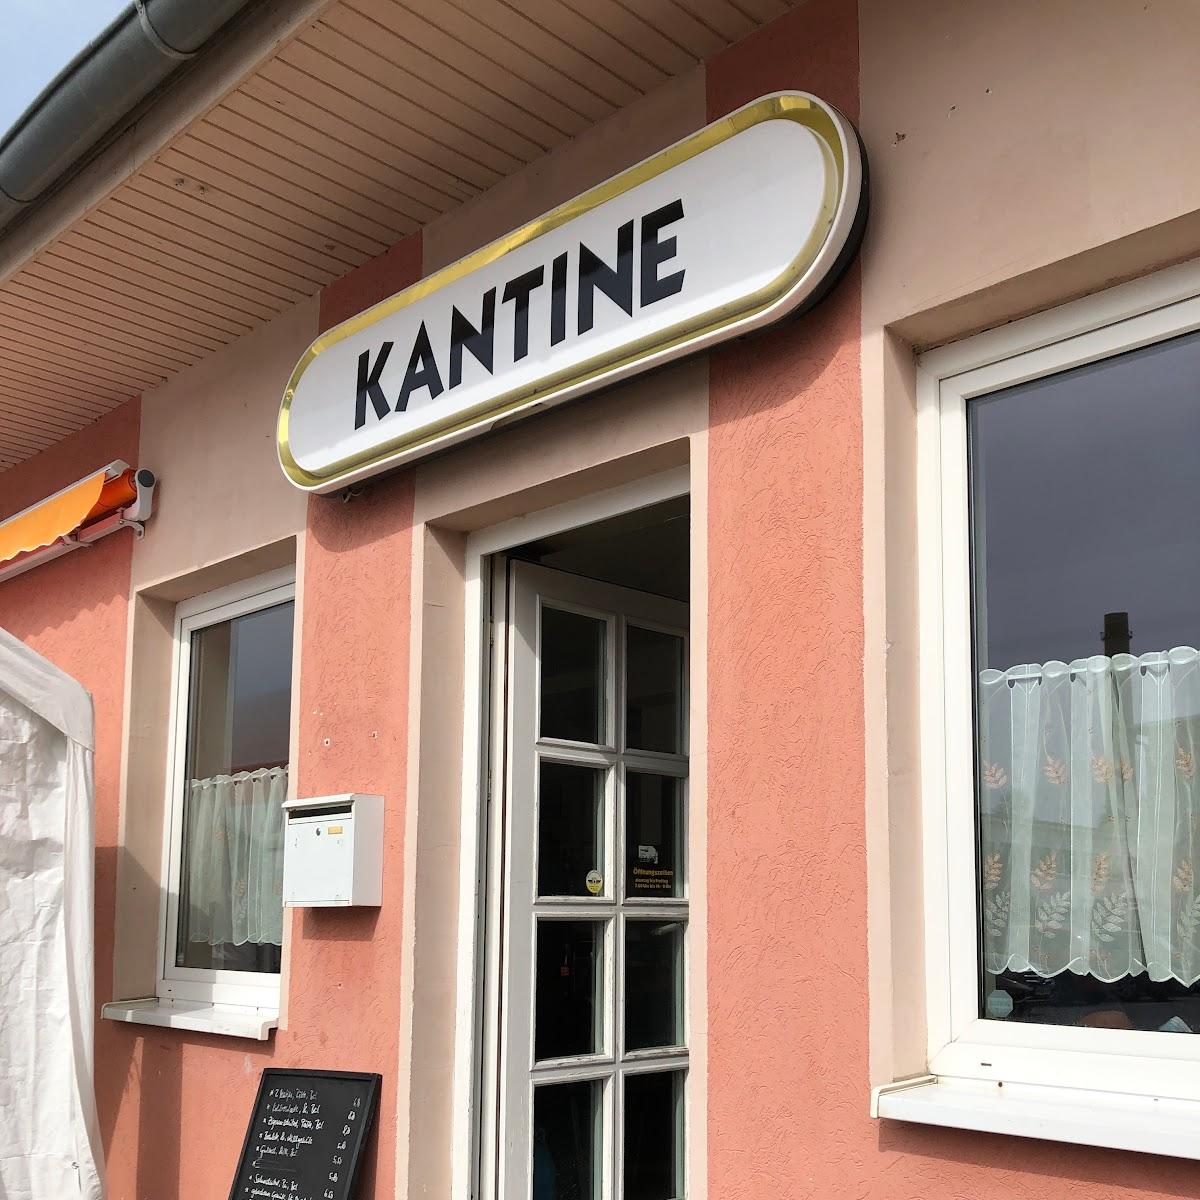 Restaurant "Kantine Ribnitz Sylvia Exner-Waack" in Ribnitz-Damgarten